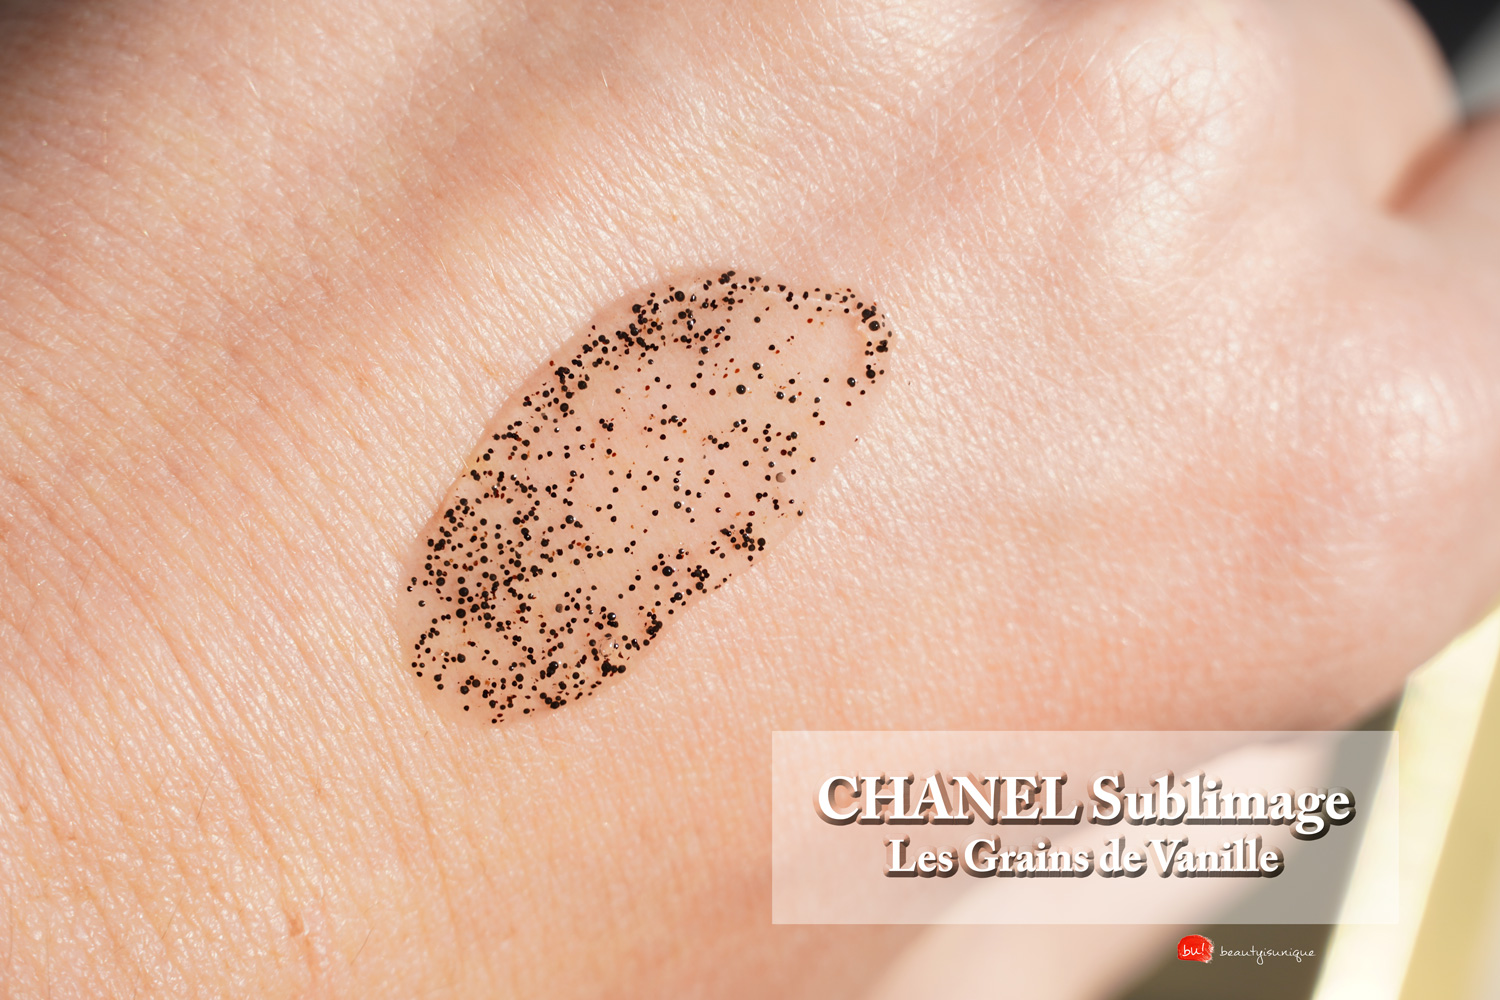 Chanel-sublimage-les-grains-de-vanille